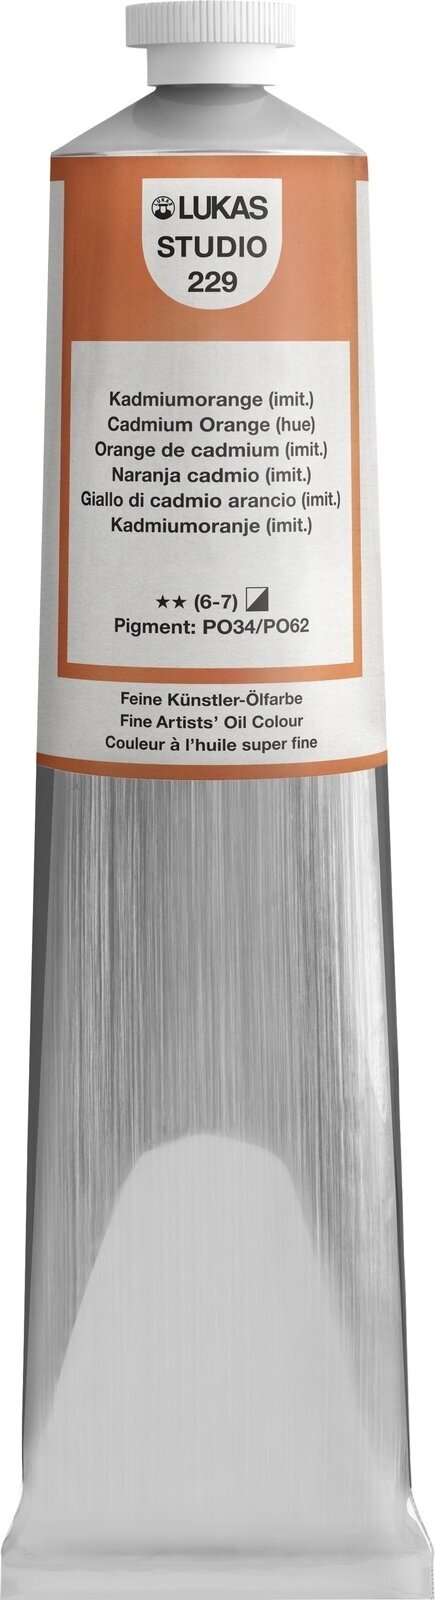 Oil colour Lukas Studio Oil Paint Aluminium Tube Oil Paint Cadmium Orange Hue 200 ml 1 pc